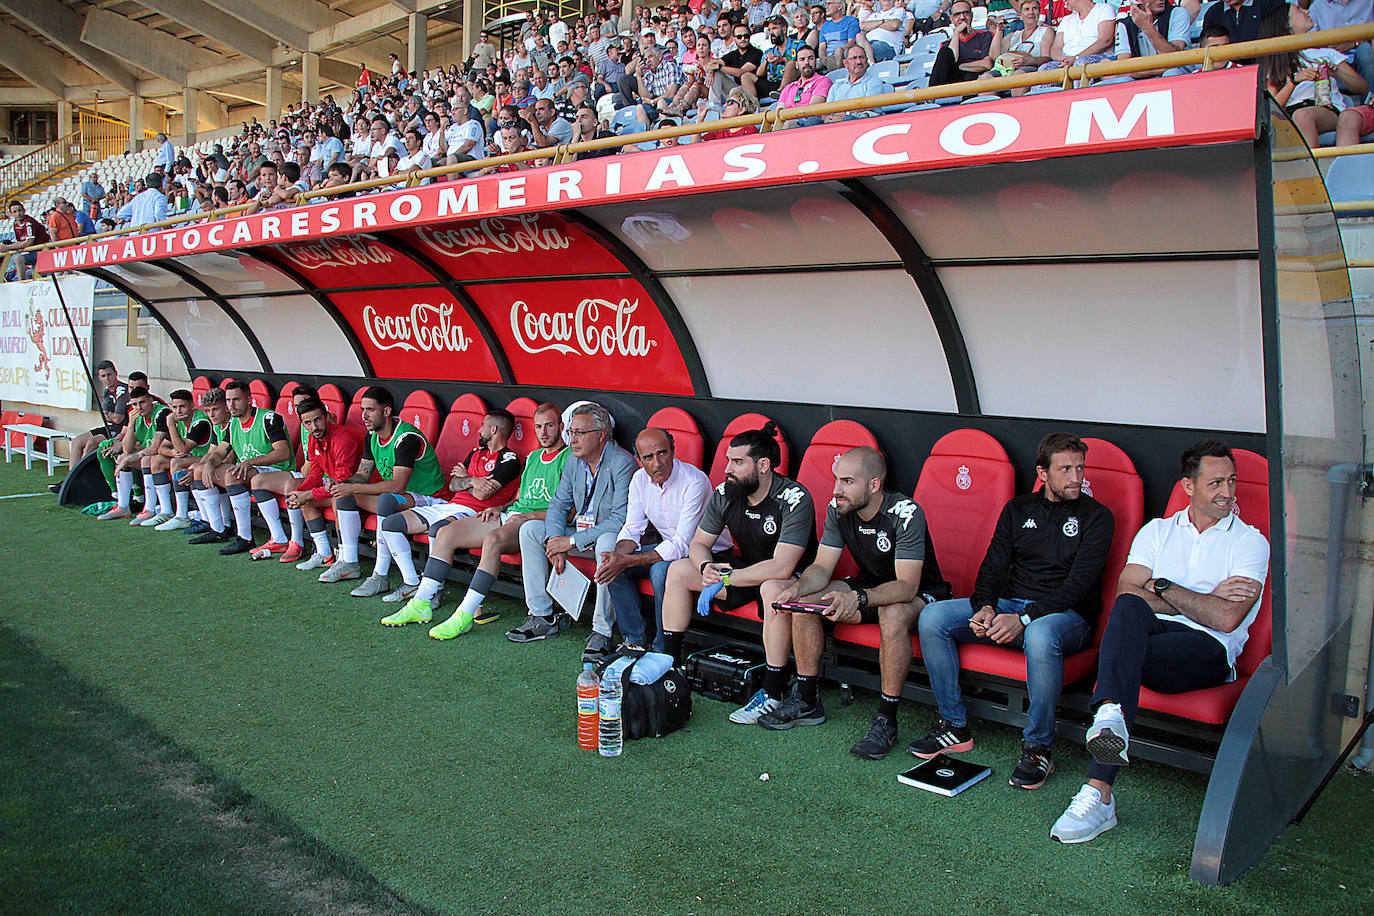 Los leoneses vencieron en el Reino de León al filial del Real Madrid en su presentación en León